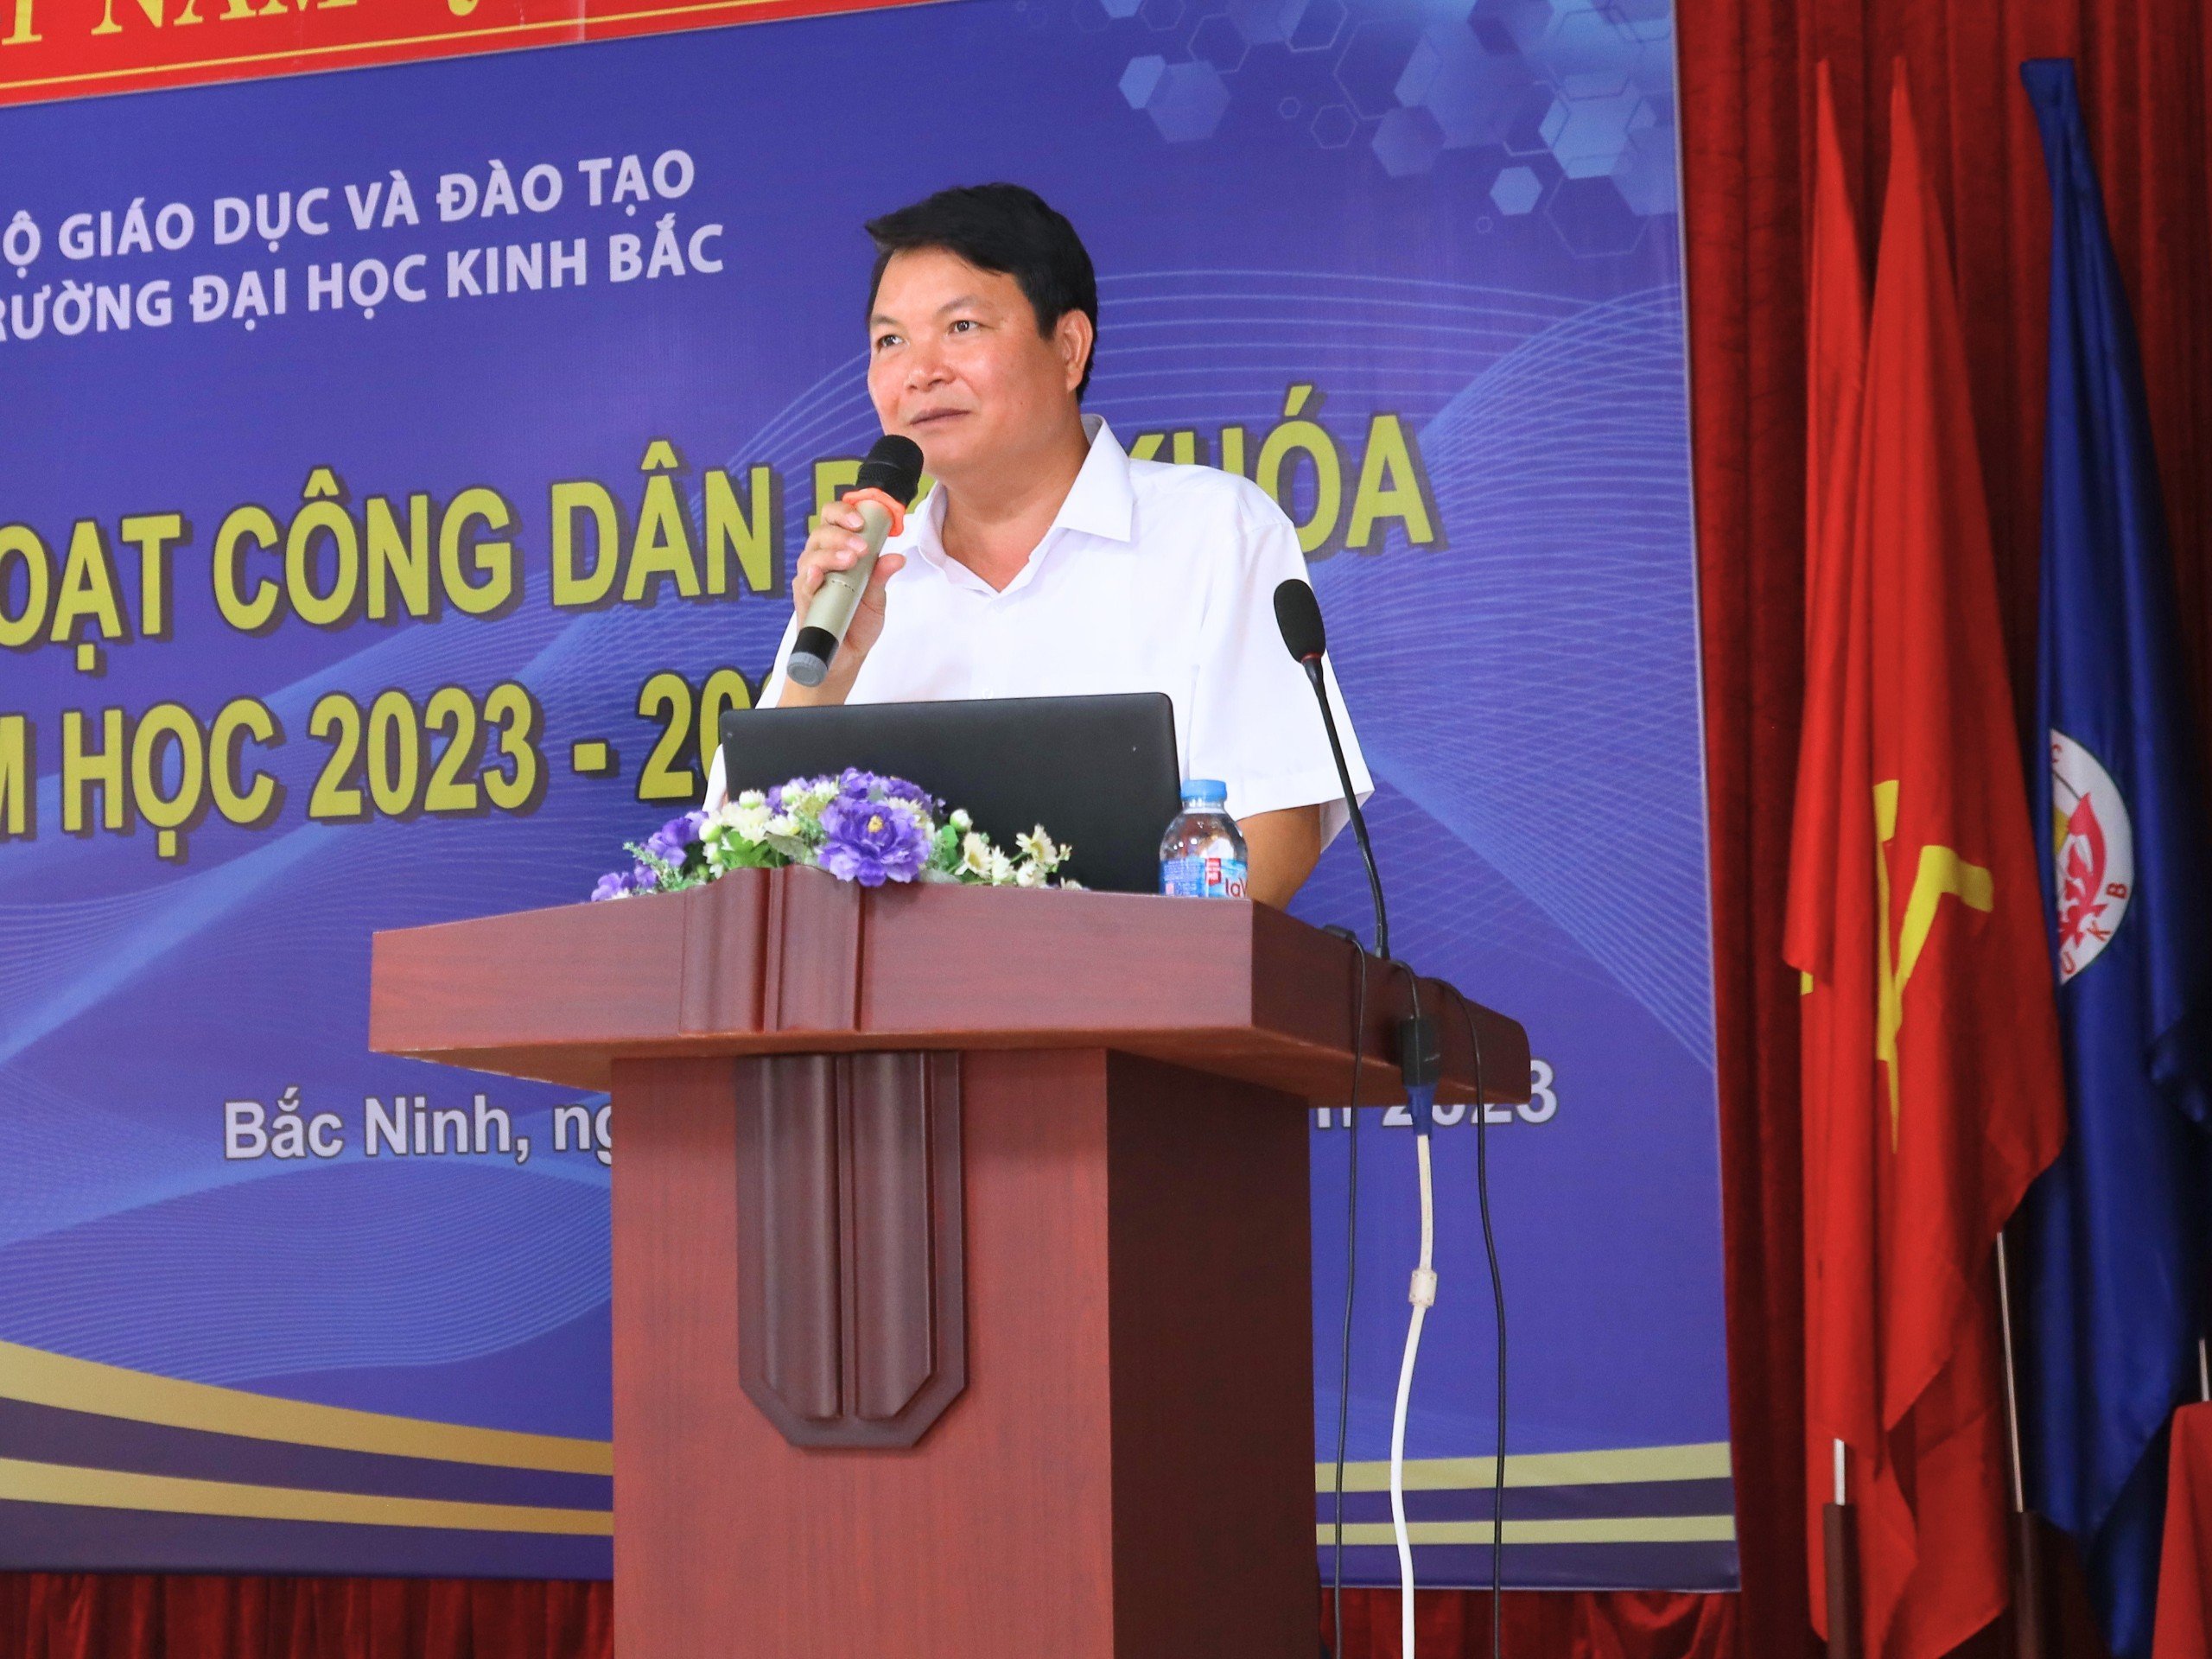 TS. Nguyễn Văn Hùng ?Phó trưởng Ban Tuyên giáo Tỉnh ủy Bắc Ninh